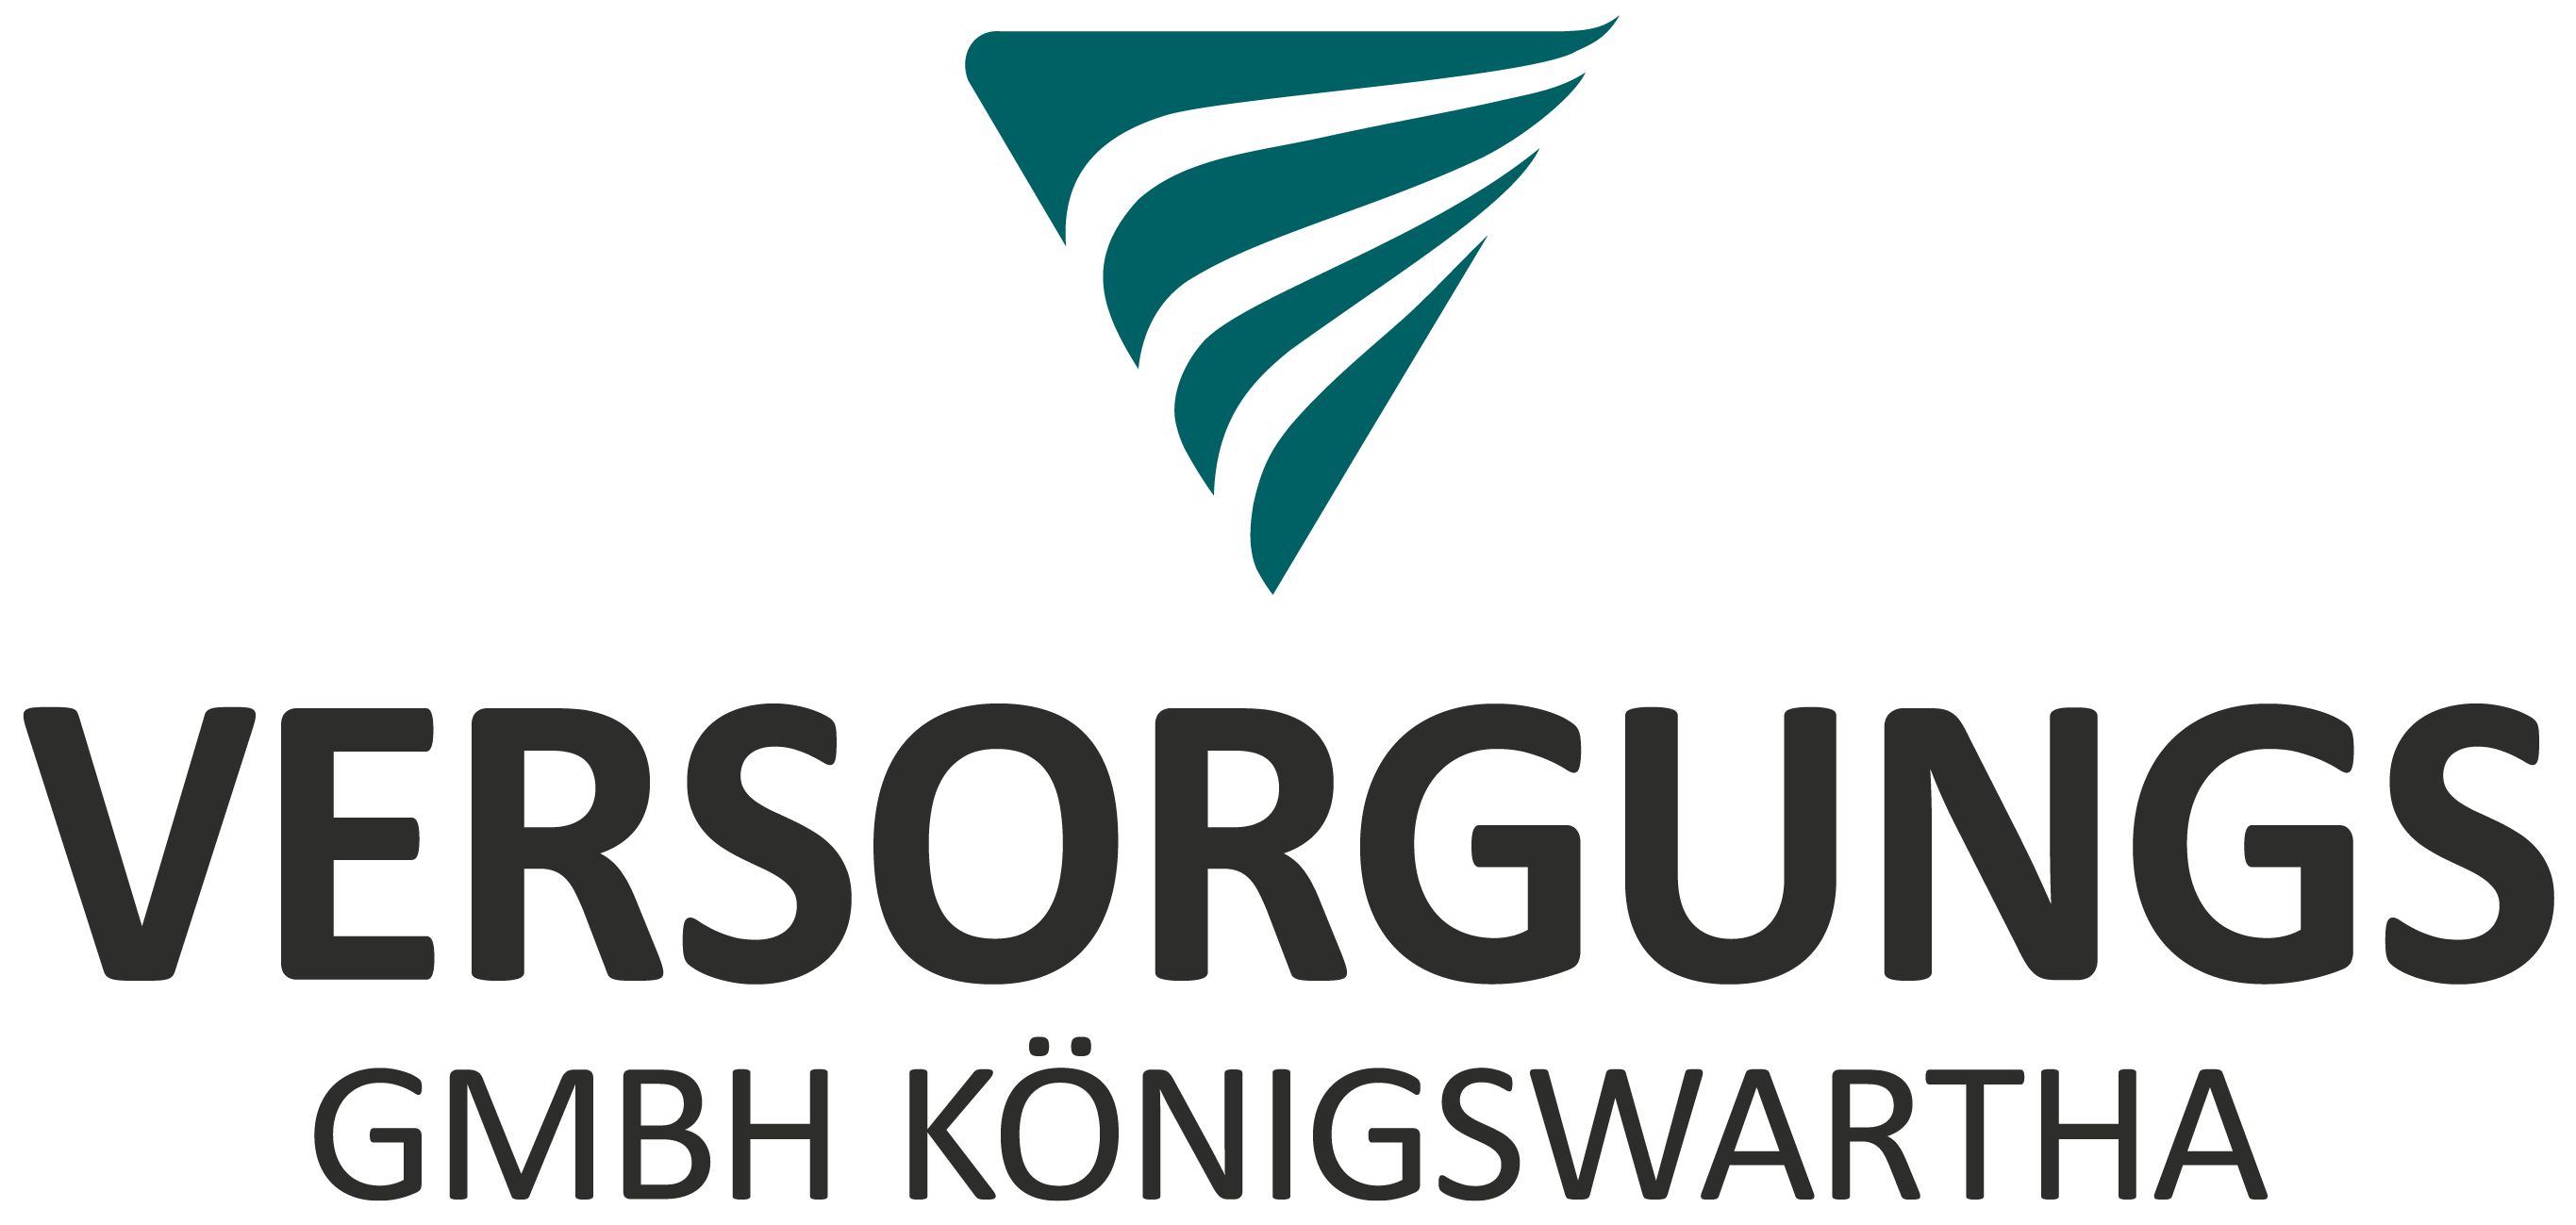 Versorgungs GmbH Königswartha